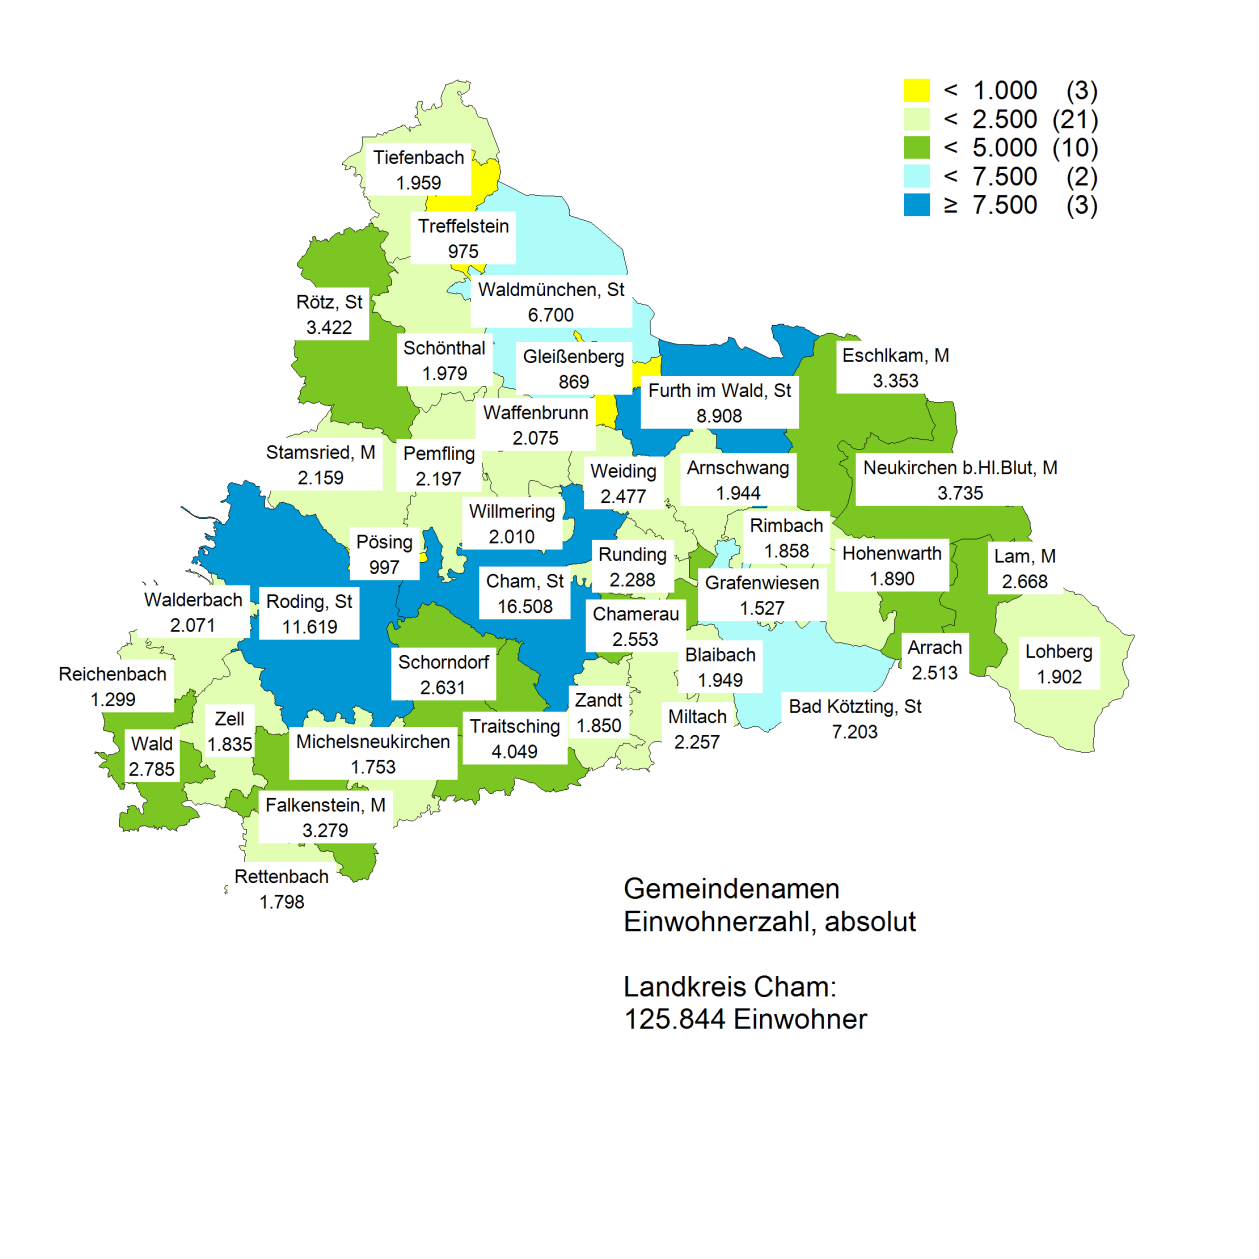 2.2 Bevölkerungsstand und entwicklung der Gemeinden im Landkreis Cham insgesamt Abbildung 1: Bevölkerung in den Gemeinden im Landkreis Cham nach